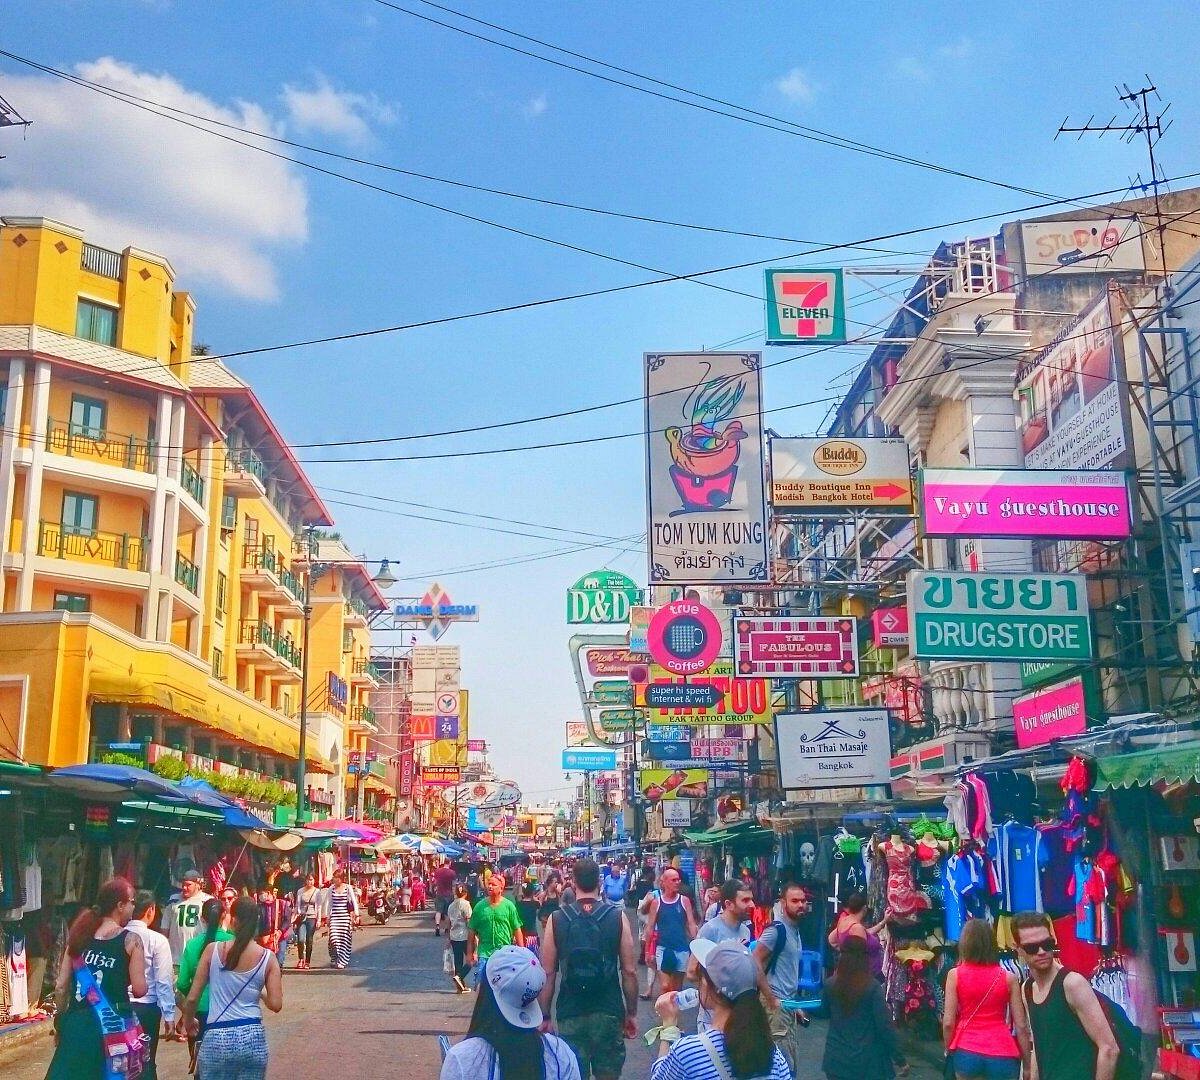 bangkok tourist requirements 2023